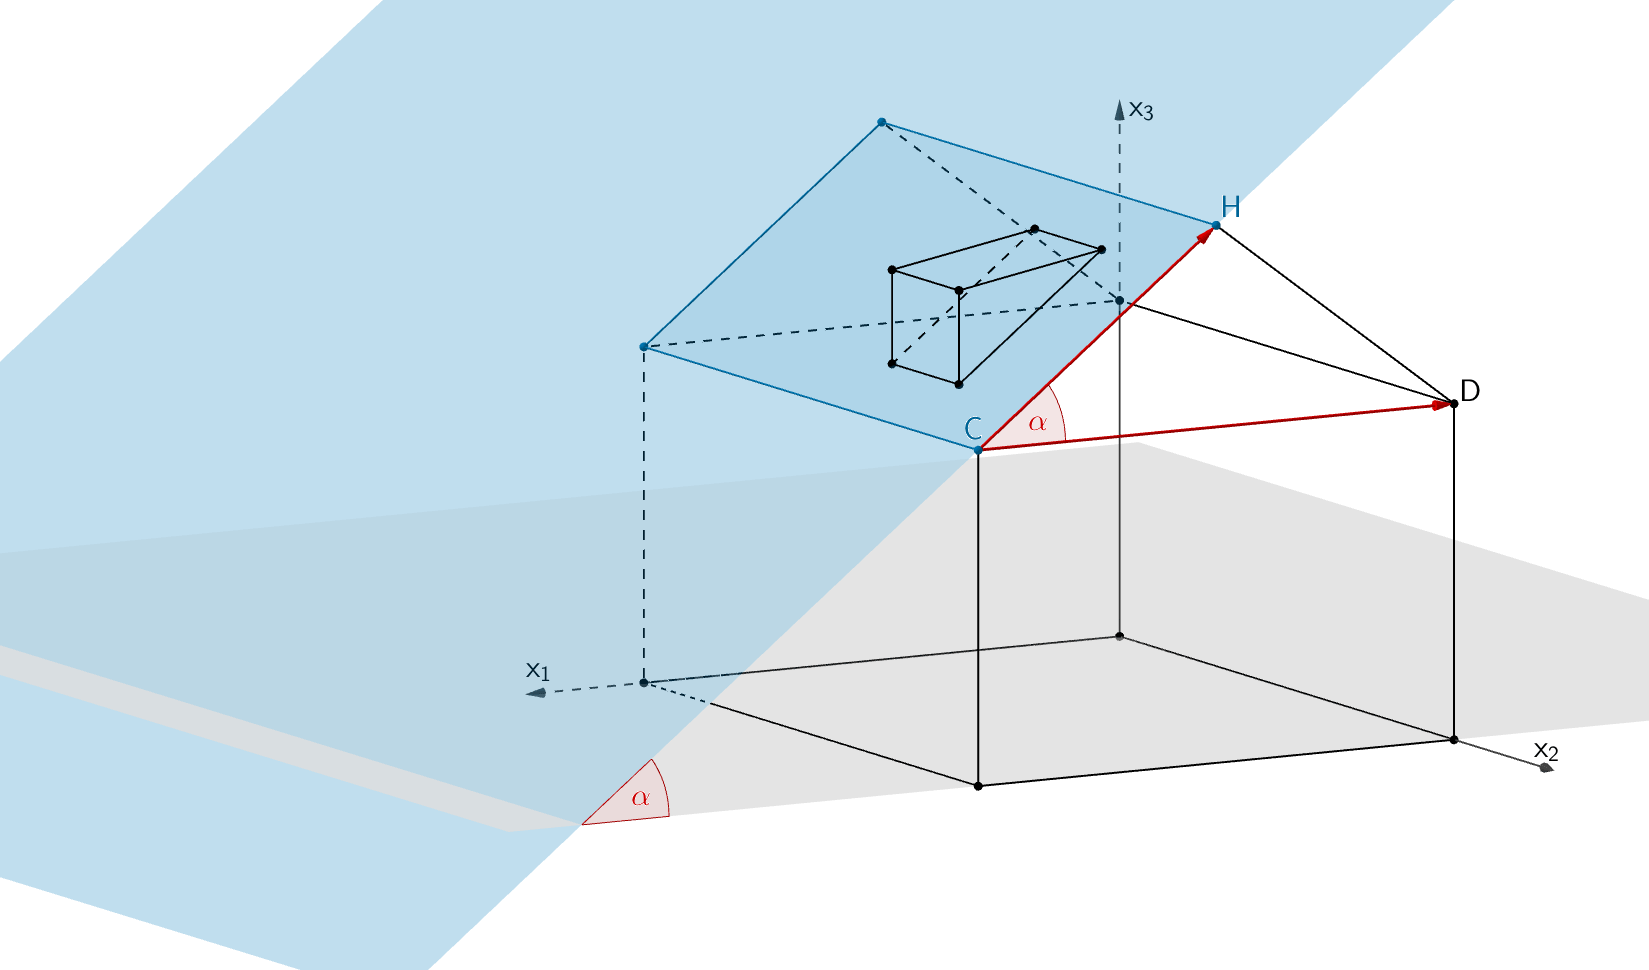 Neigungswinkel α der Dachfläche, auf der die Dachgaube errichtet werden soll (Rechteck BCHG), gegen die Horizontale